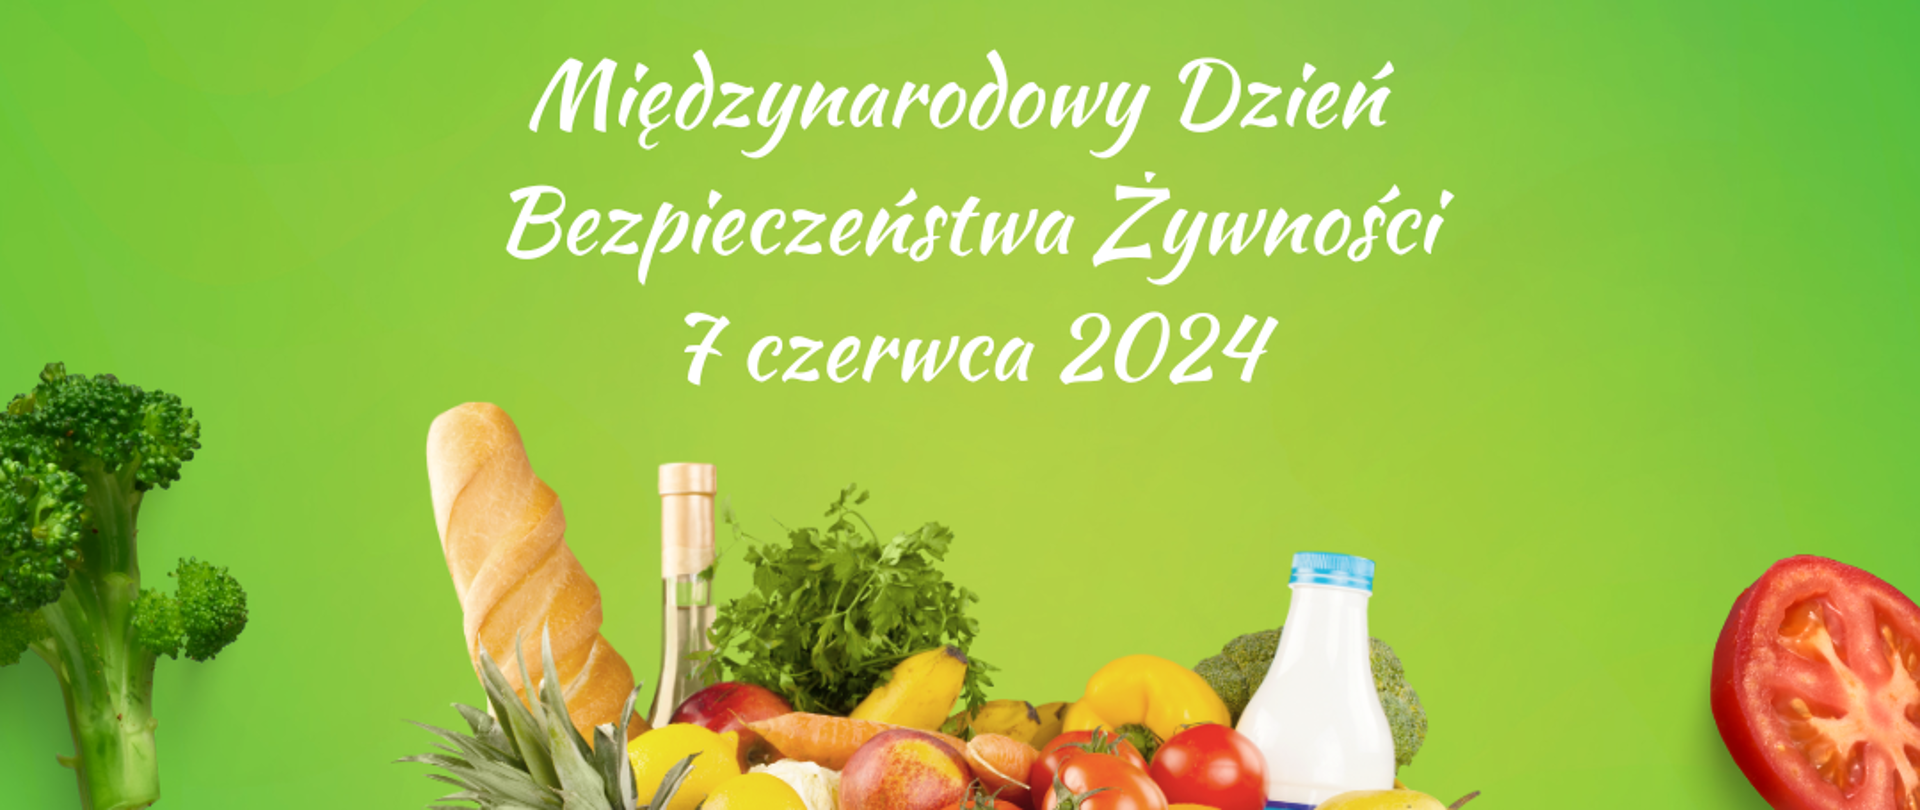 Biały napis na zielonym tle: Międzynarodowy Dzień Bezpieczeństwa Żywności 7 czerwca 2024. Pod napisem koszyk z zakupami 